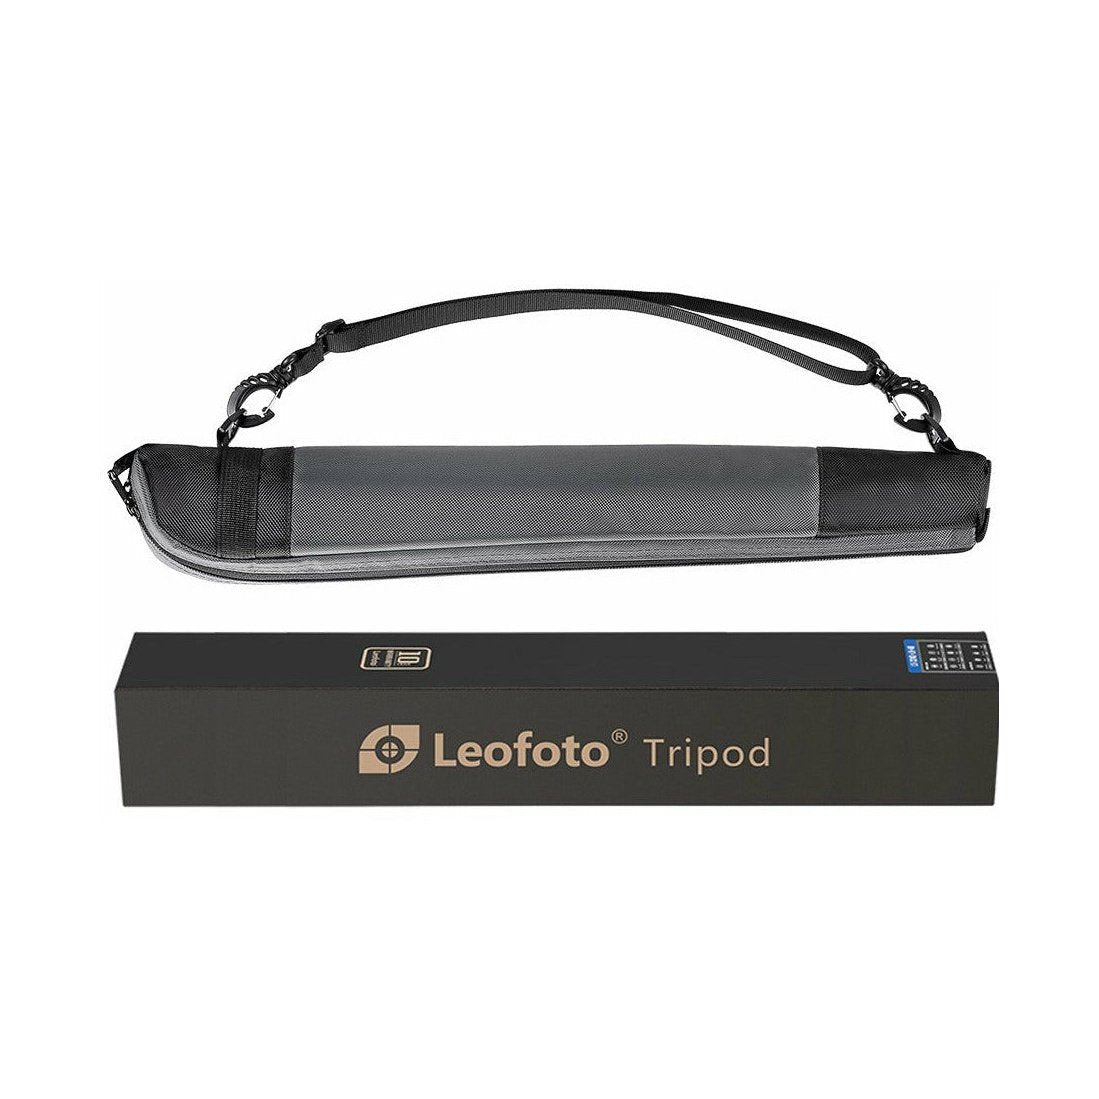 Leofoto MP-285C 5-Section Carbon Fiber Monopod leofoto-india